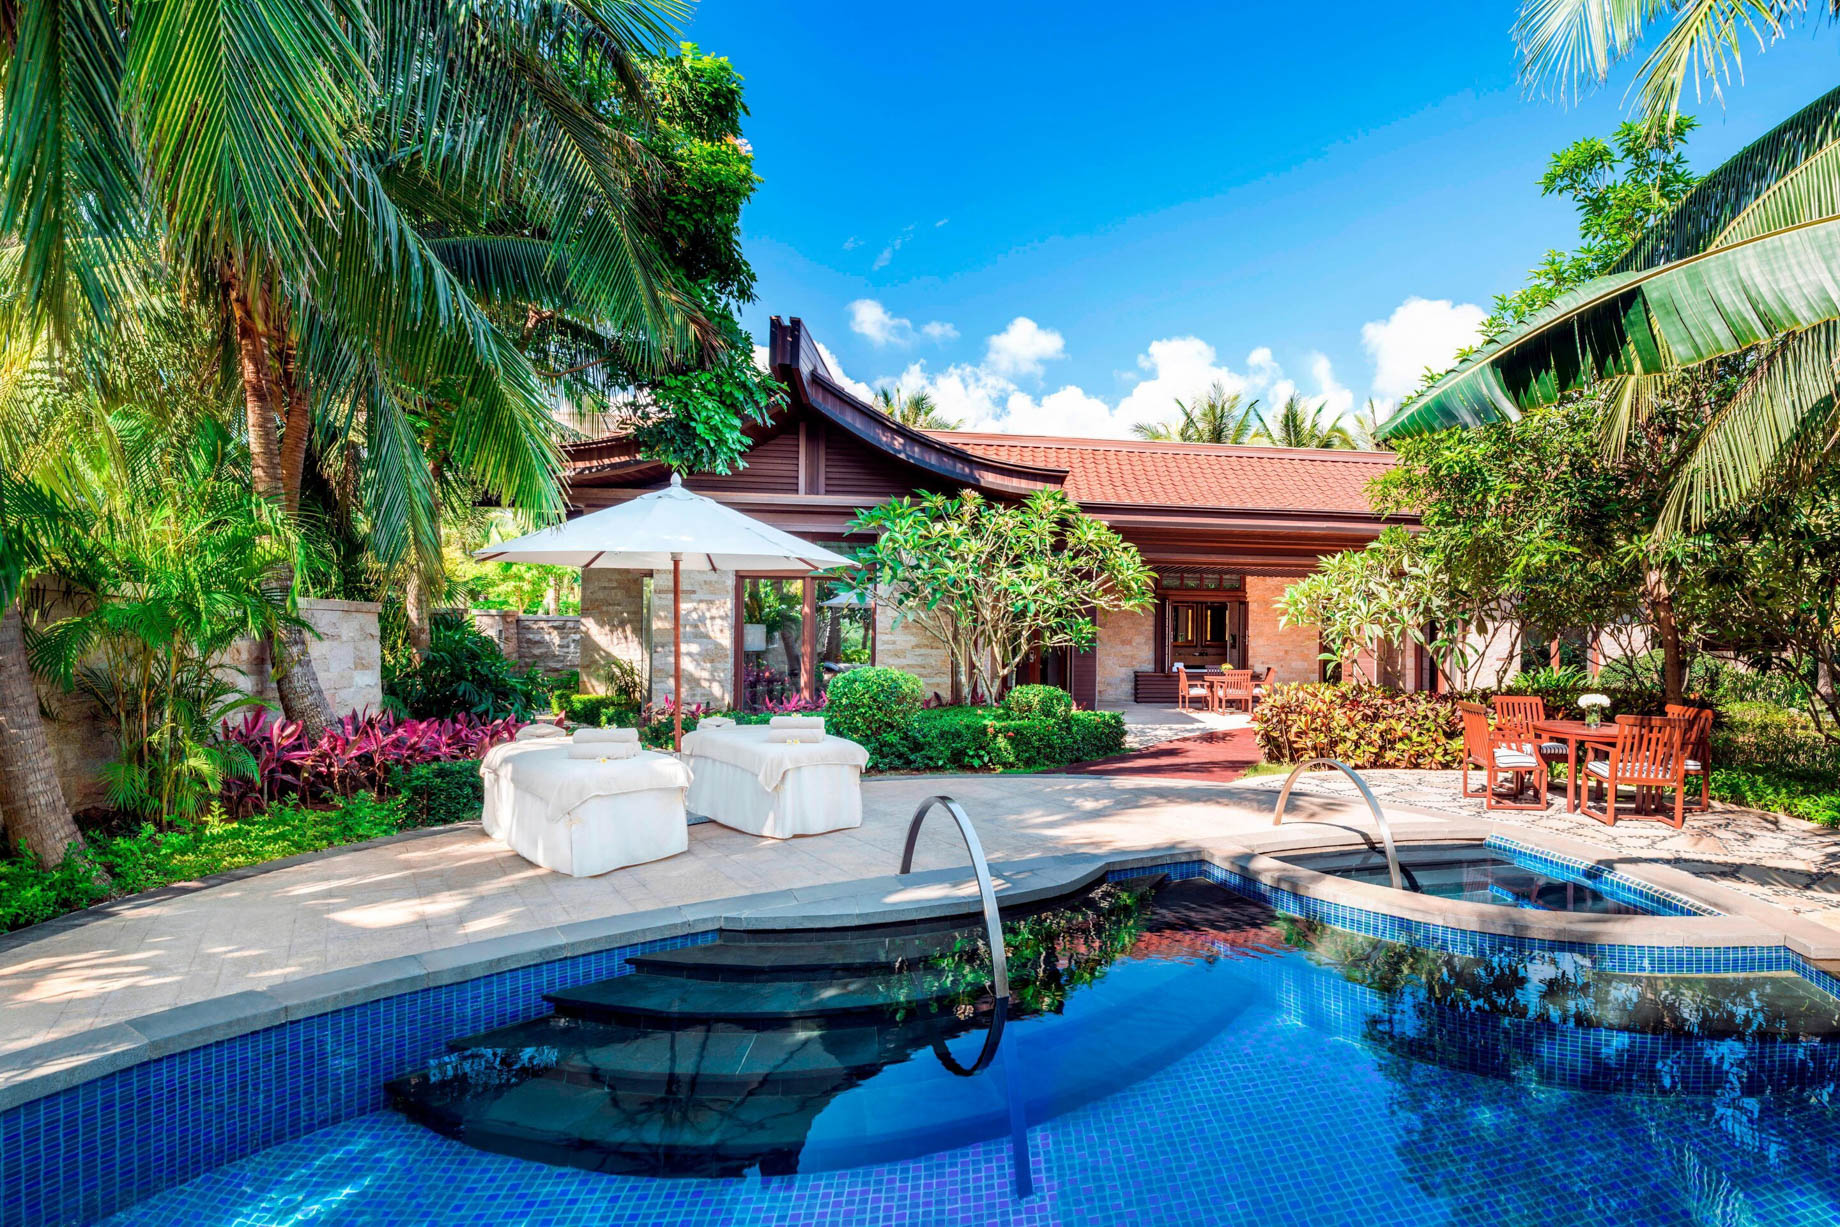 The St. Regis Sanya Yalong Bay Resort - Hainan, China - Poolside Villa Outdoor Pool